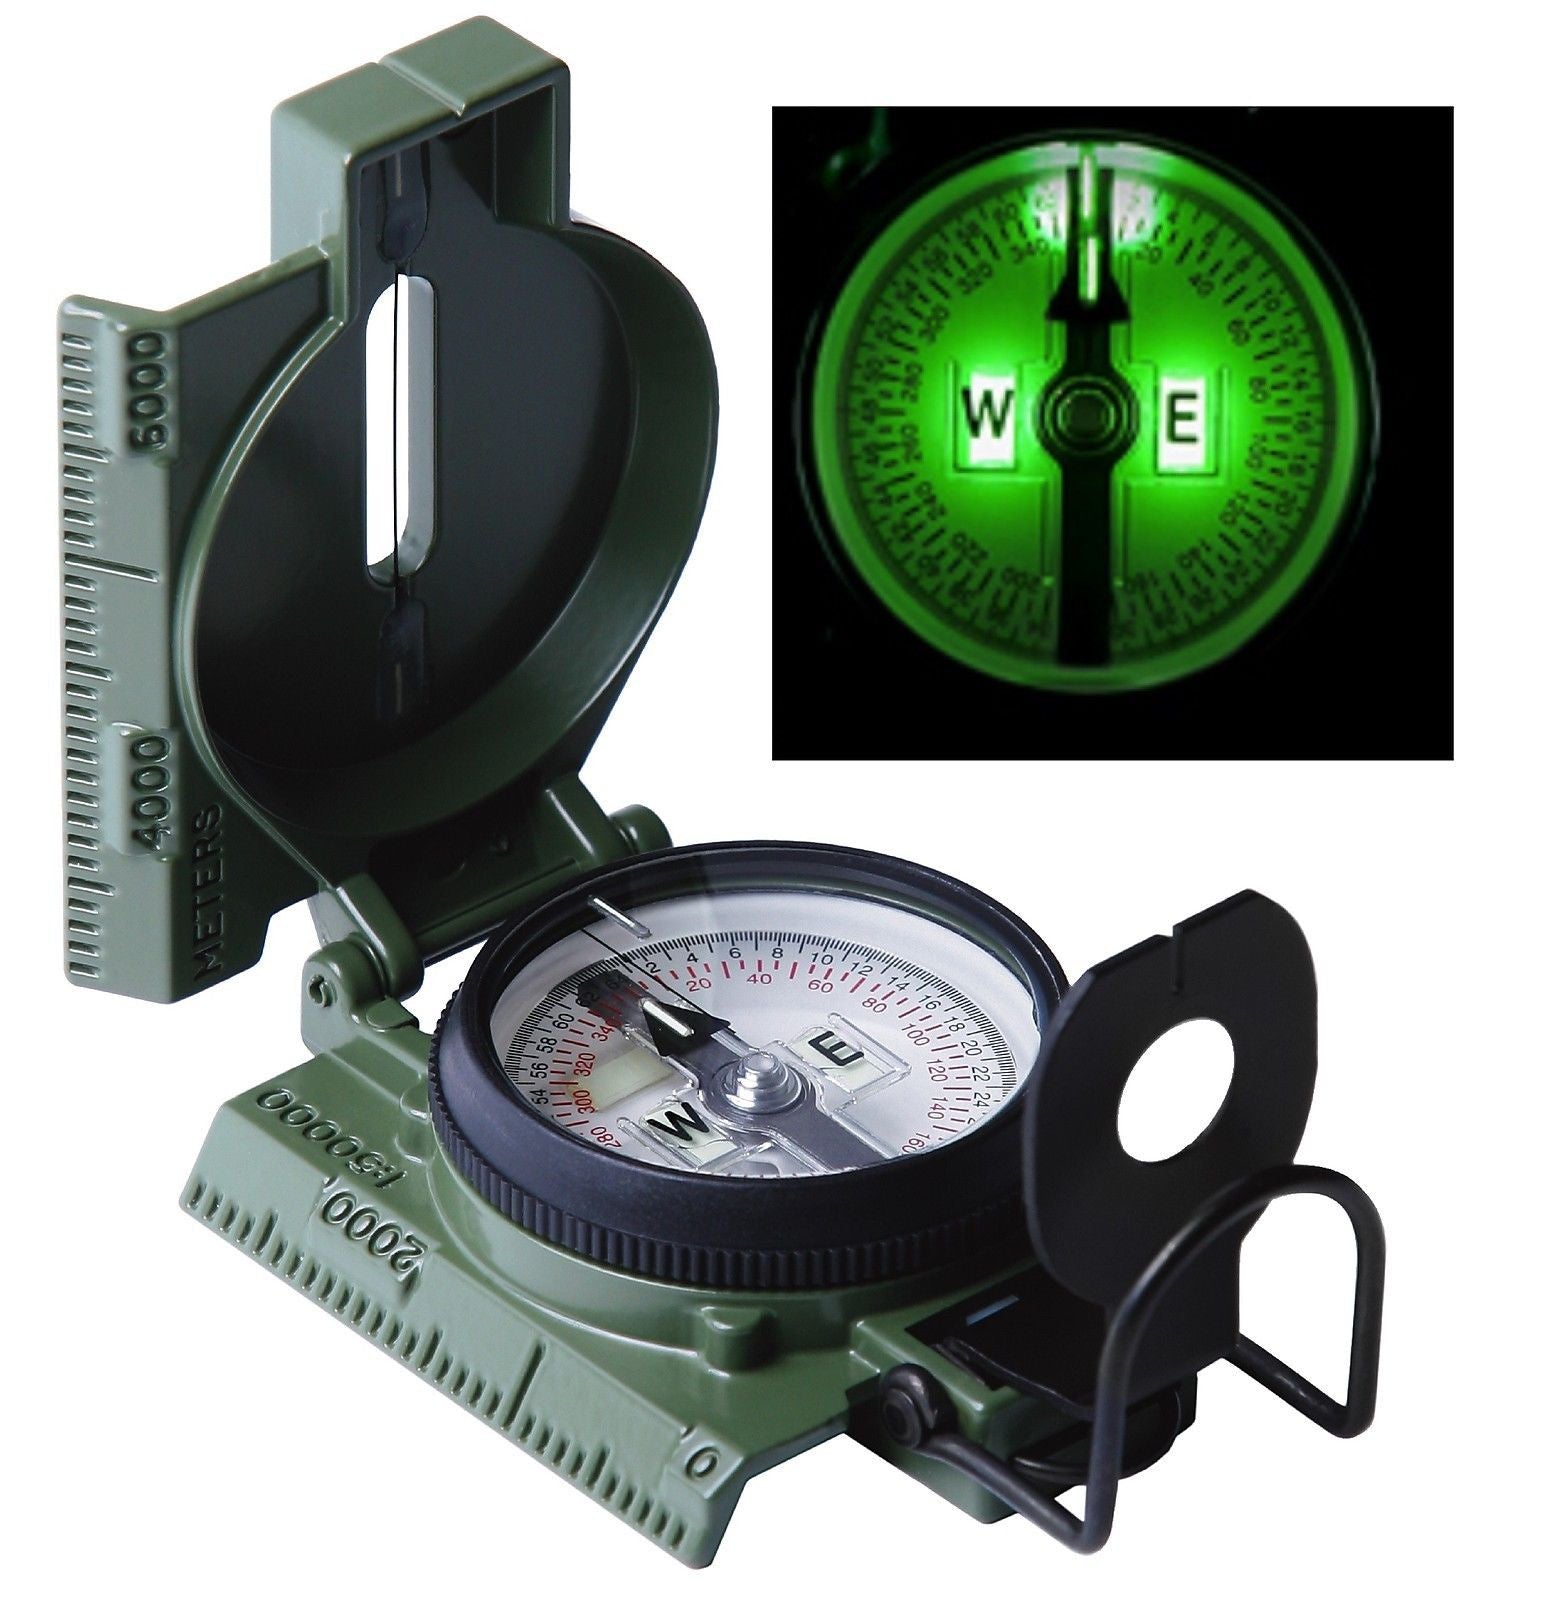 Military Tritium Compass